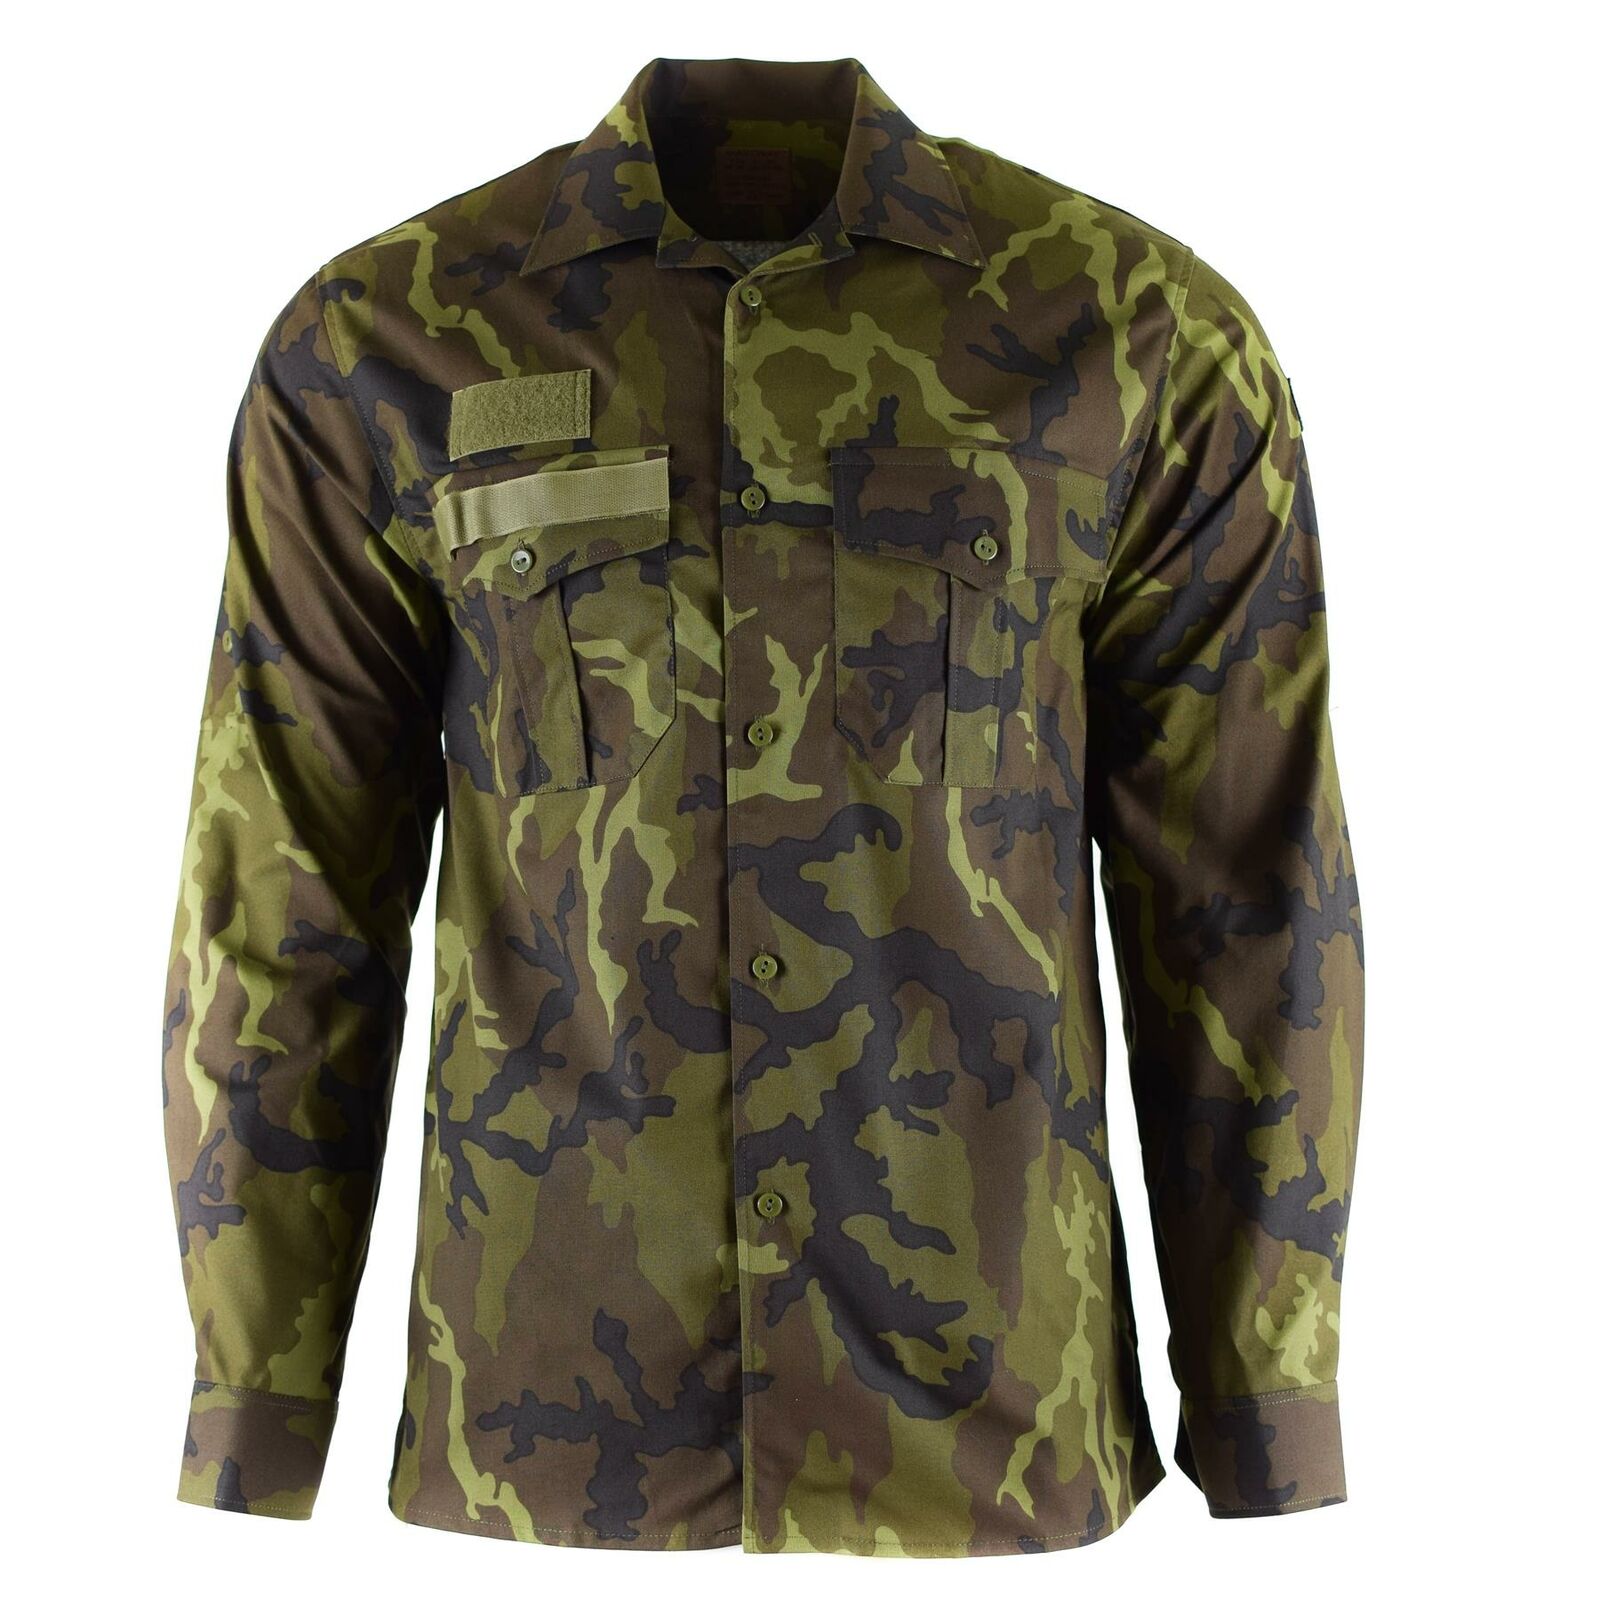 Genuine Czech army shirt Woodland camo vz 95 field uniform military surplus  NEW